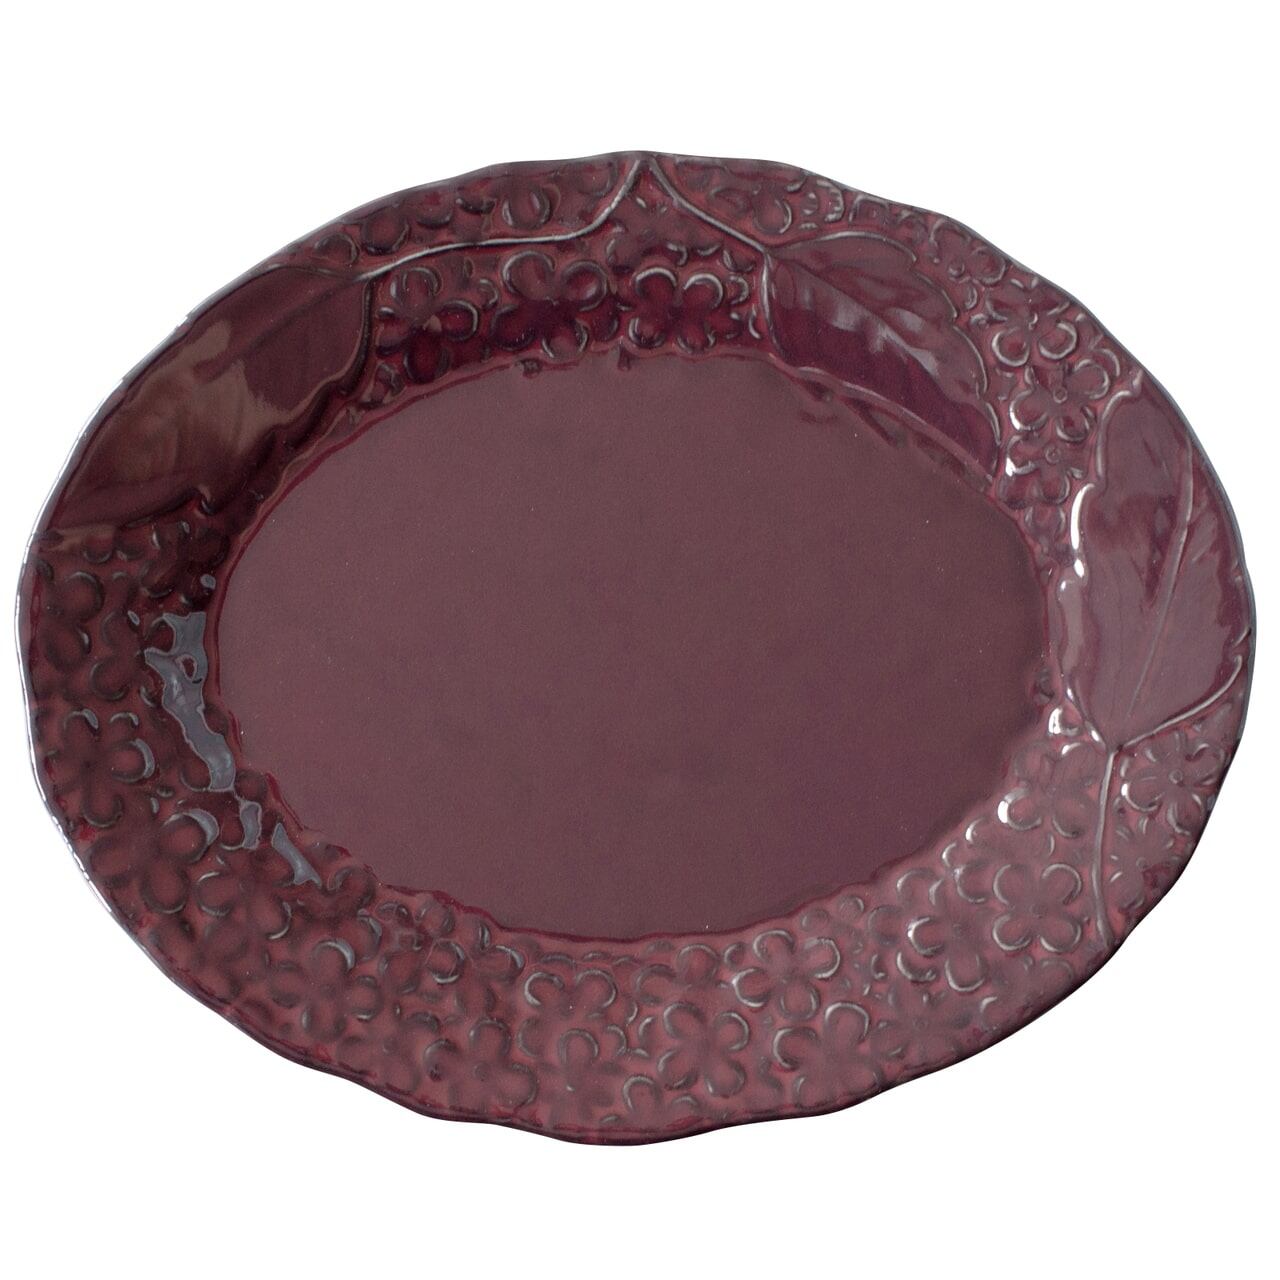 aito製作所 「 リアン Lien 」オーバルプレート 皿 約25×20cm パープル 美濃焼 267833